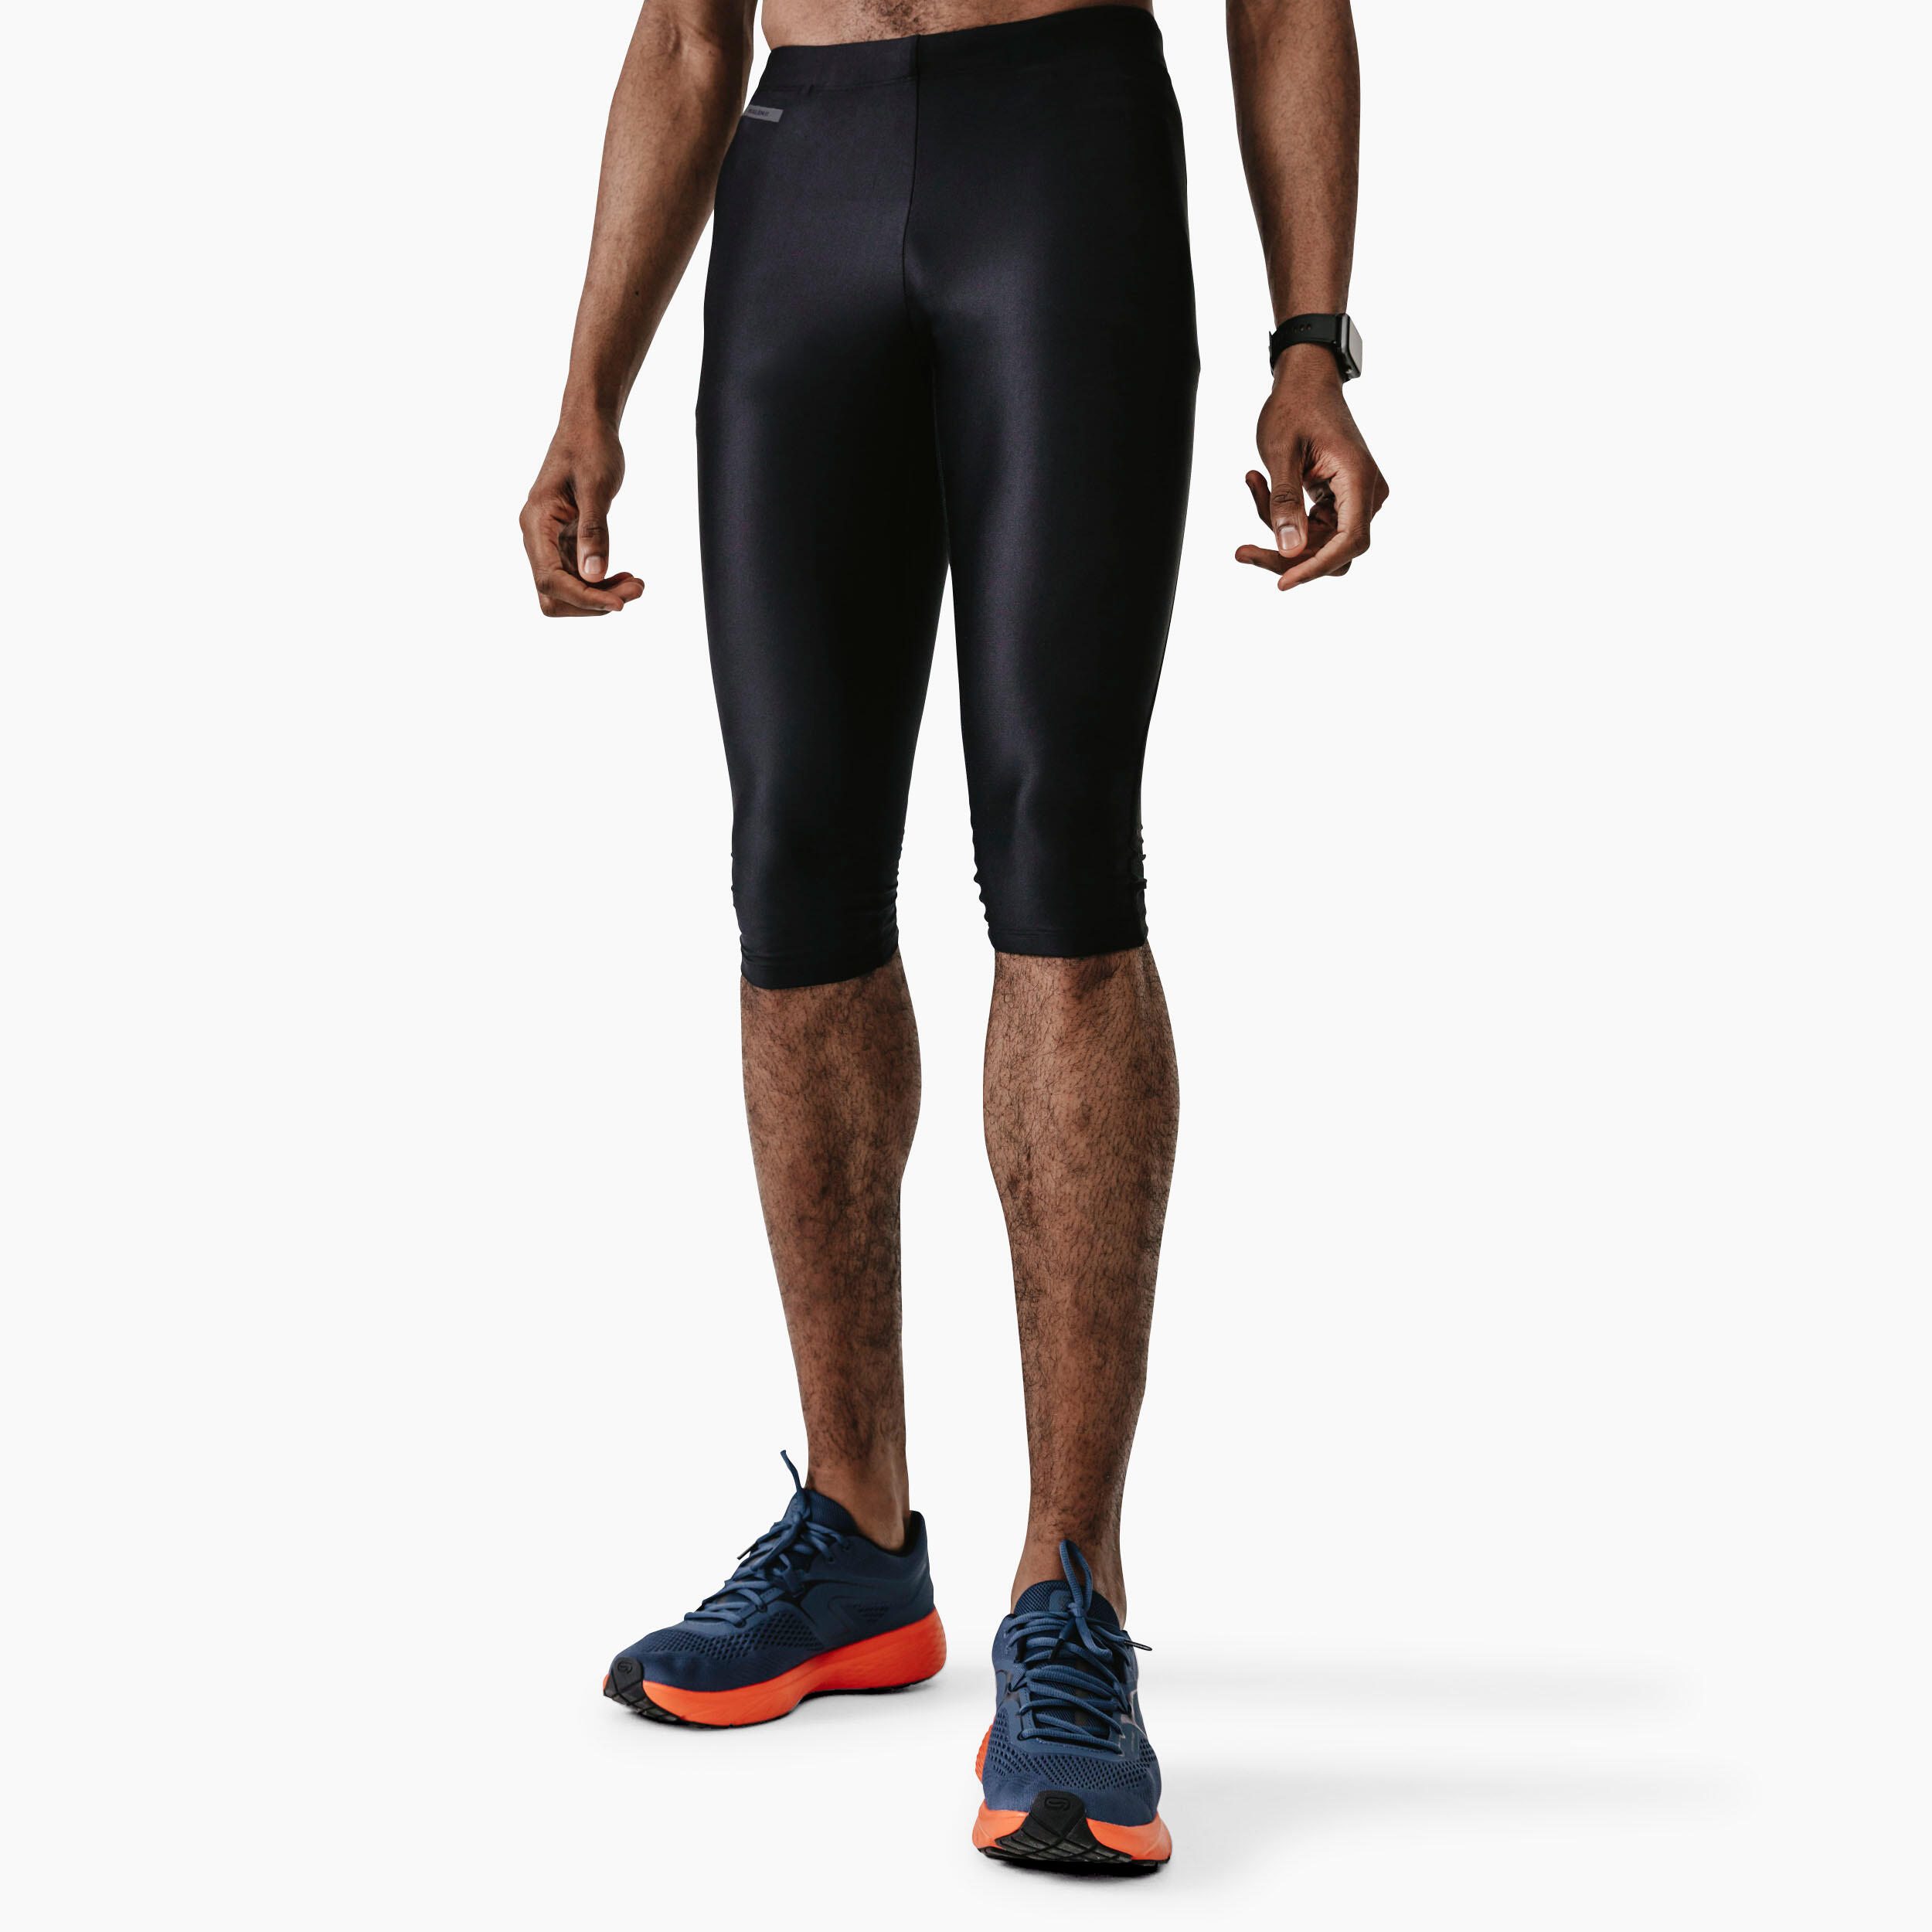 Decathlon running legging/tight (Men), Men's Fashion, Bottoms, Trousers on  Carousell